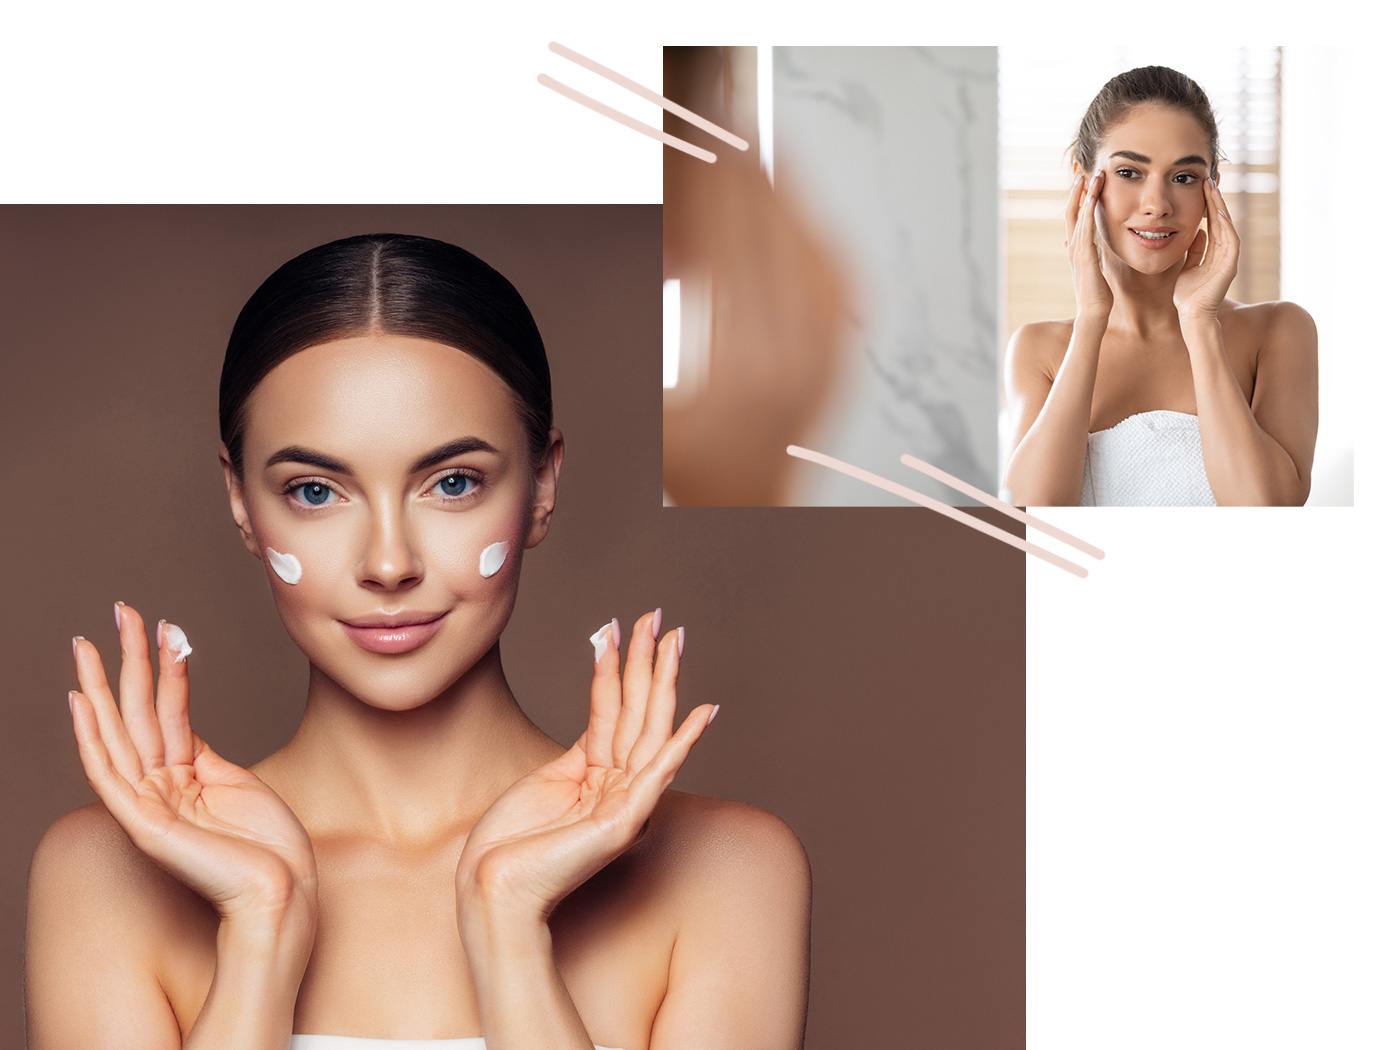 Οι beauty experts αποκαλύπτουν τα skincare λάθη που κάνεις σχεδόν καθημερινά